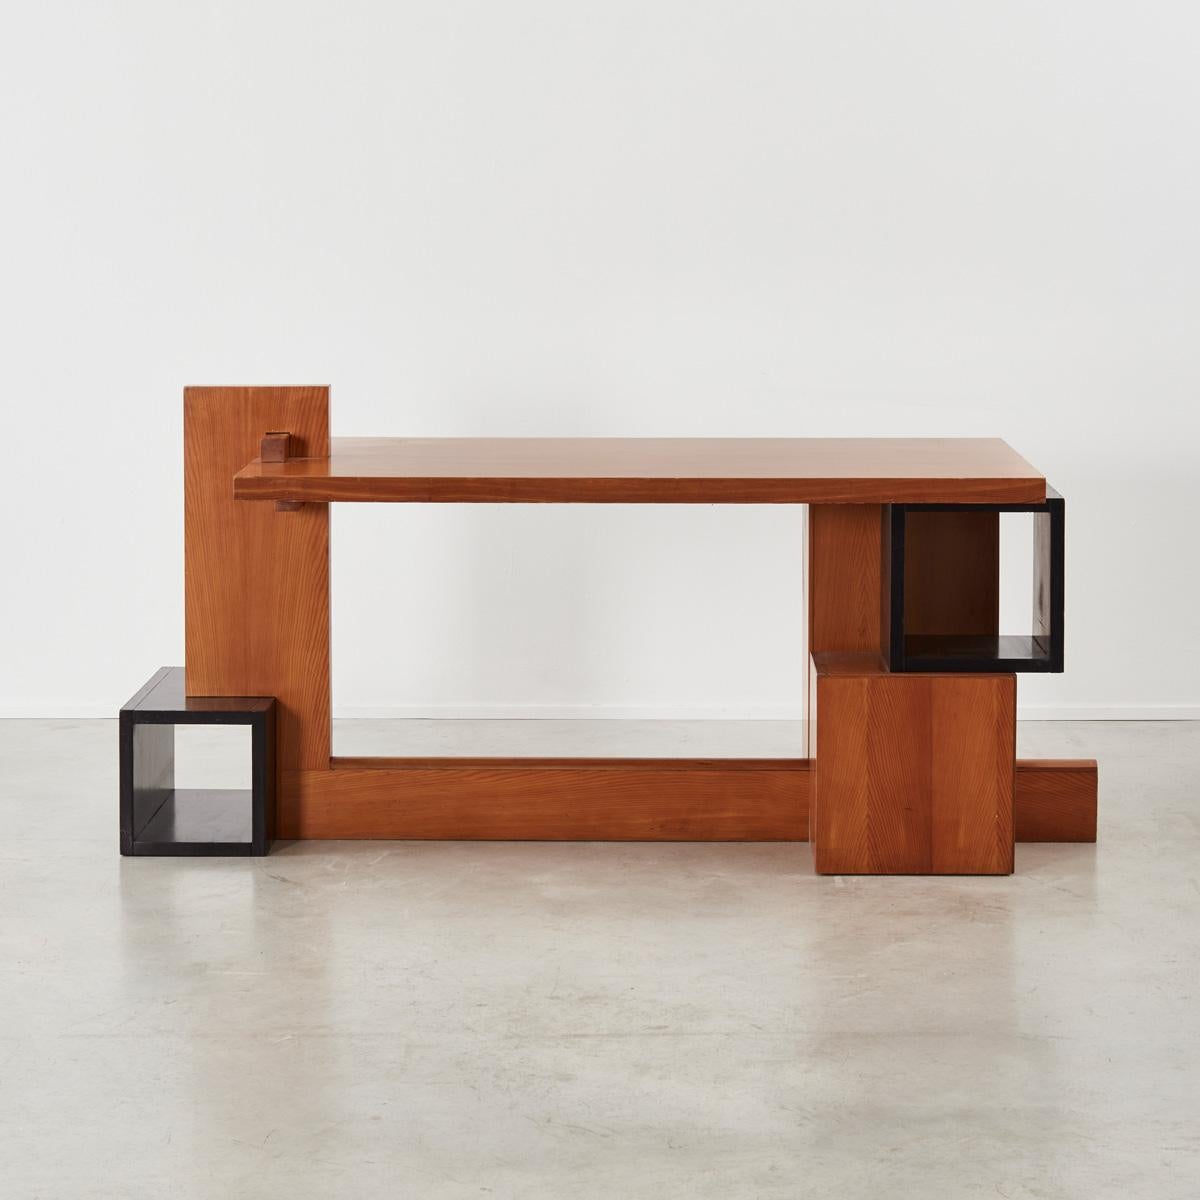 Mid-20th Century Unique Constructivist style desk by Daniele Baroni, Italy, c1960